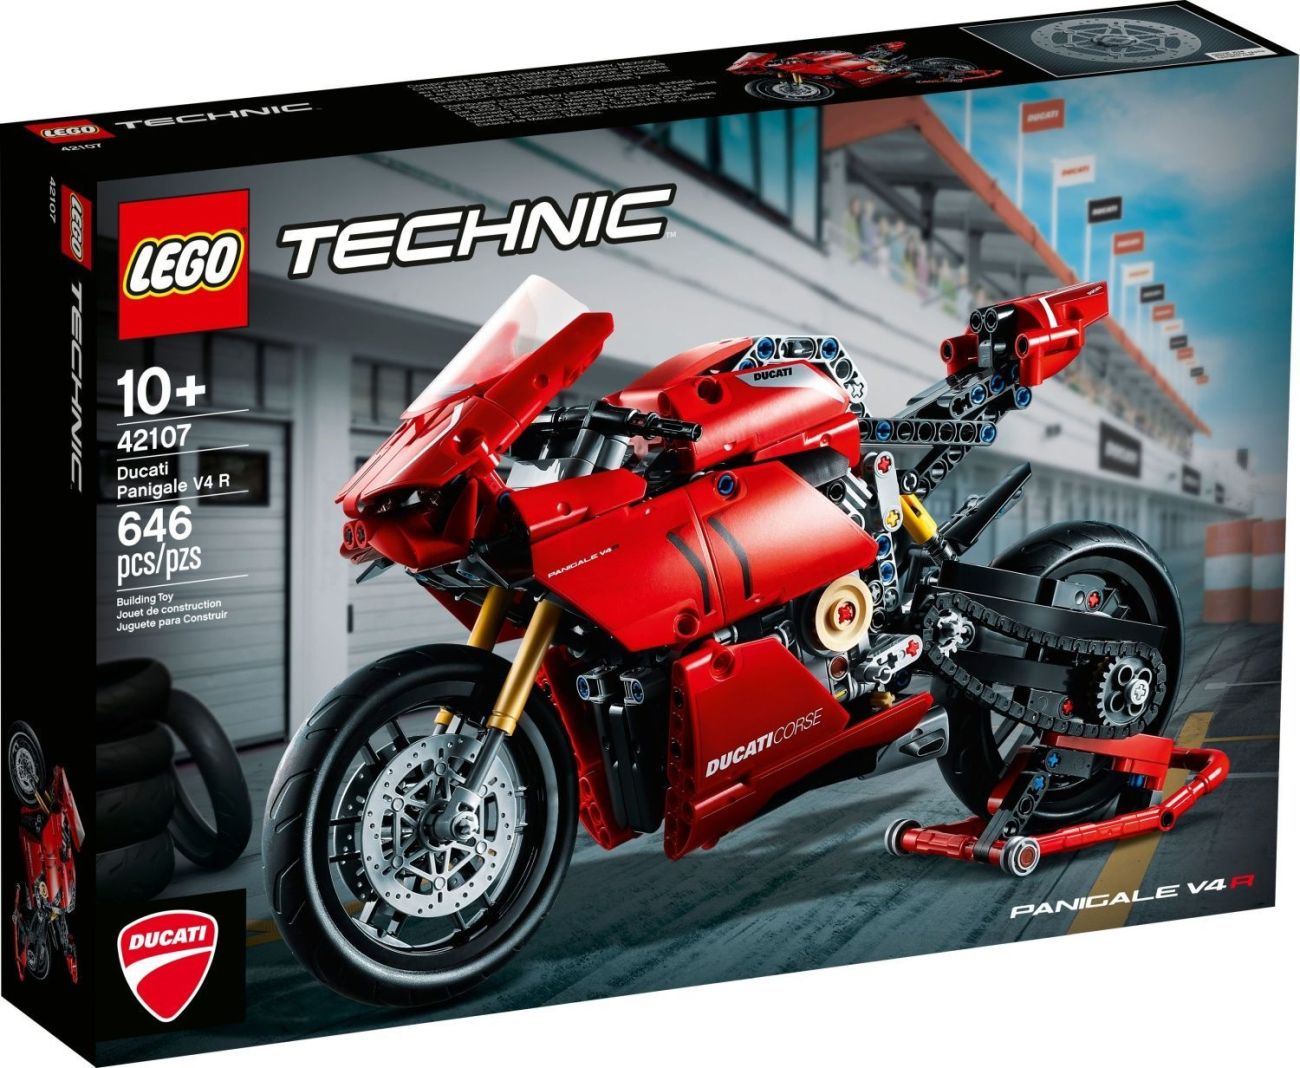 B&B Spielwaren Leser-Angebot: 15% auf LEGO Technic Neuheiten